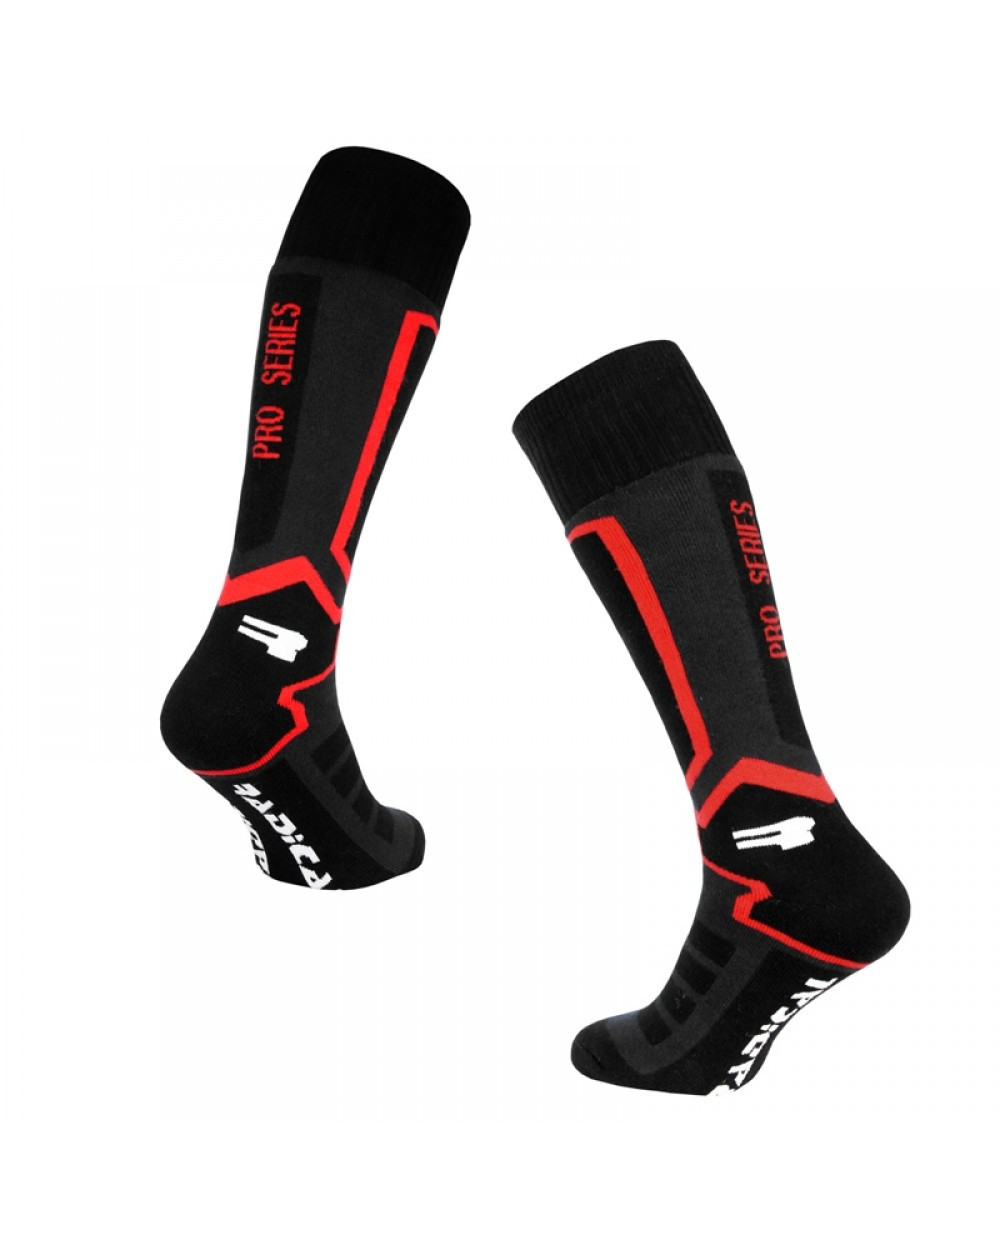 

Лыжные носки Rough Radical PRO SERIES (original), зимние термоноски, для сноуборда, высокие, теплые L (43-46), Красный